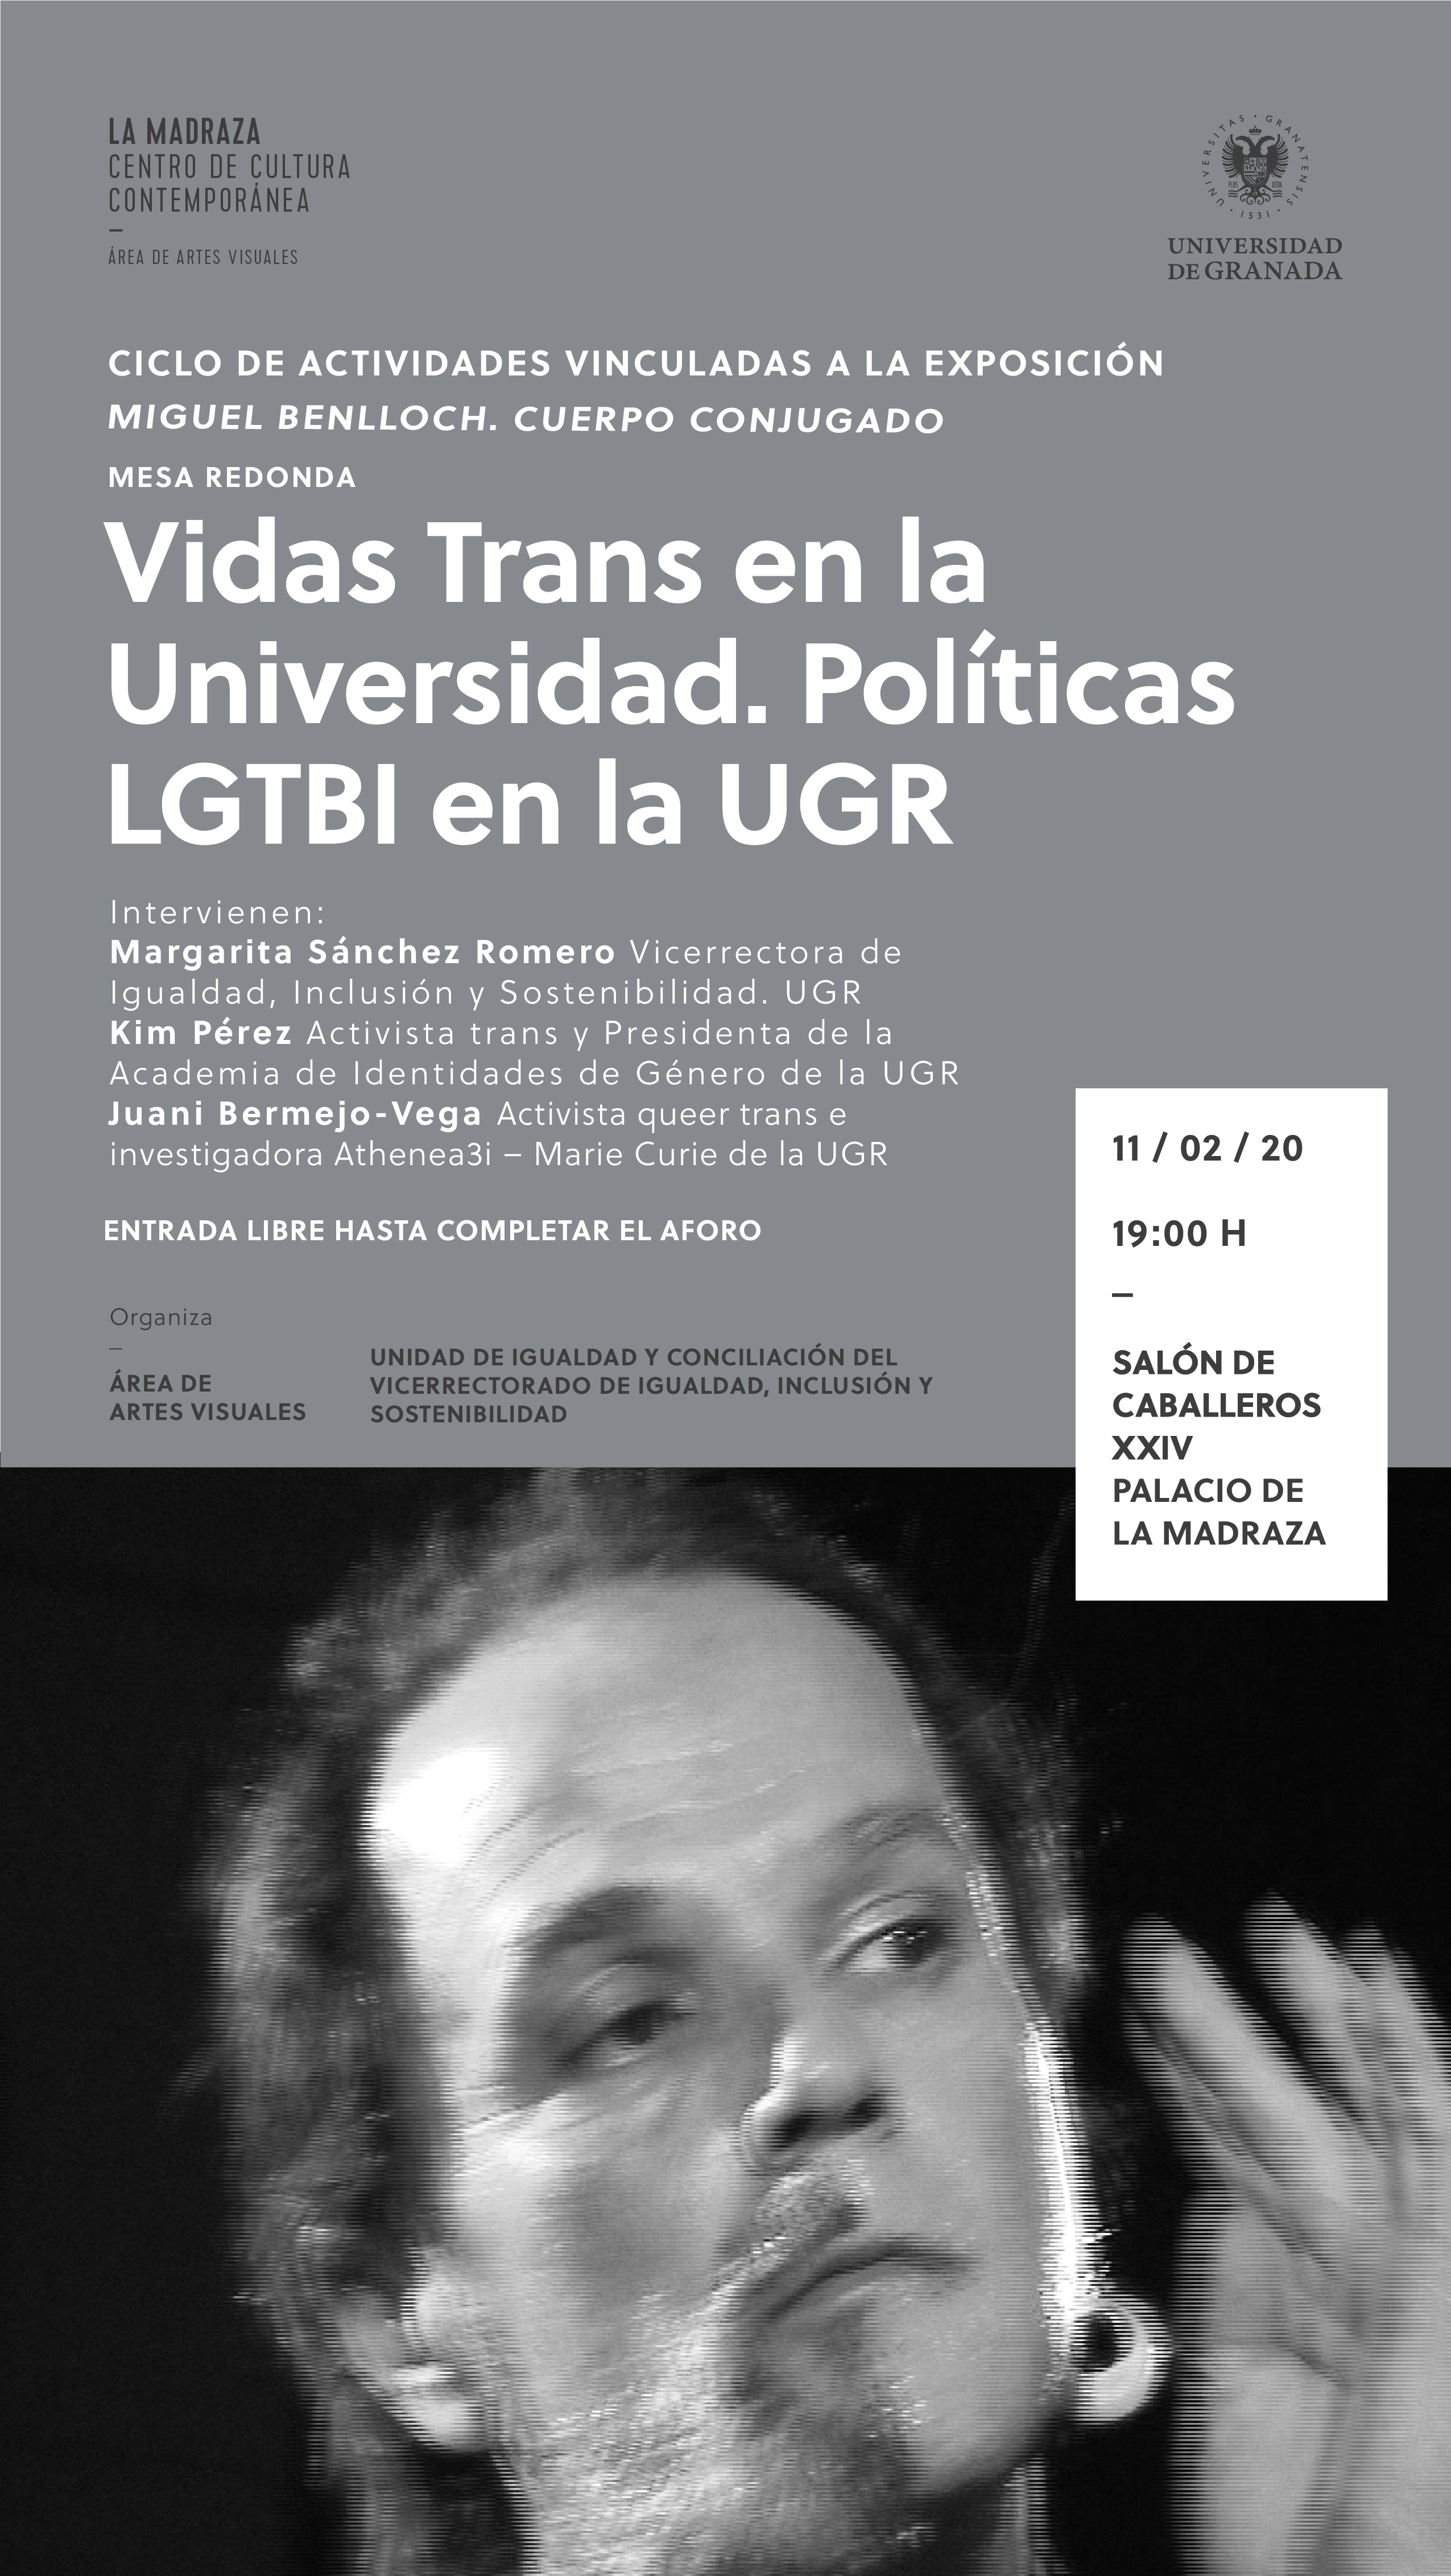 Mesa redonda sobre ‘Vidas trans en la Universidad. Políticas LGTBI en la UGR’